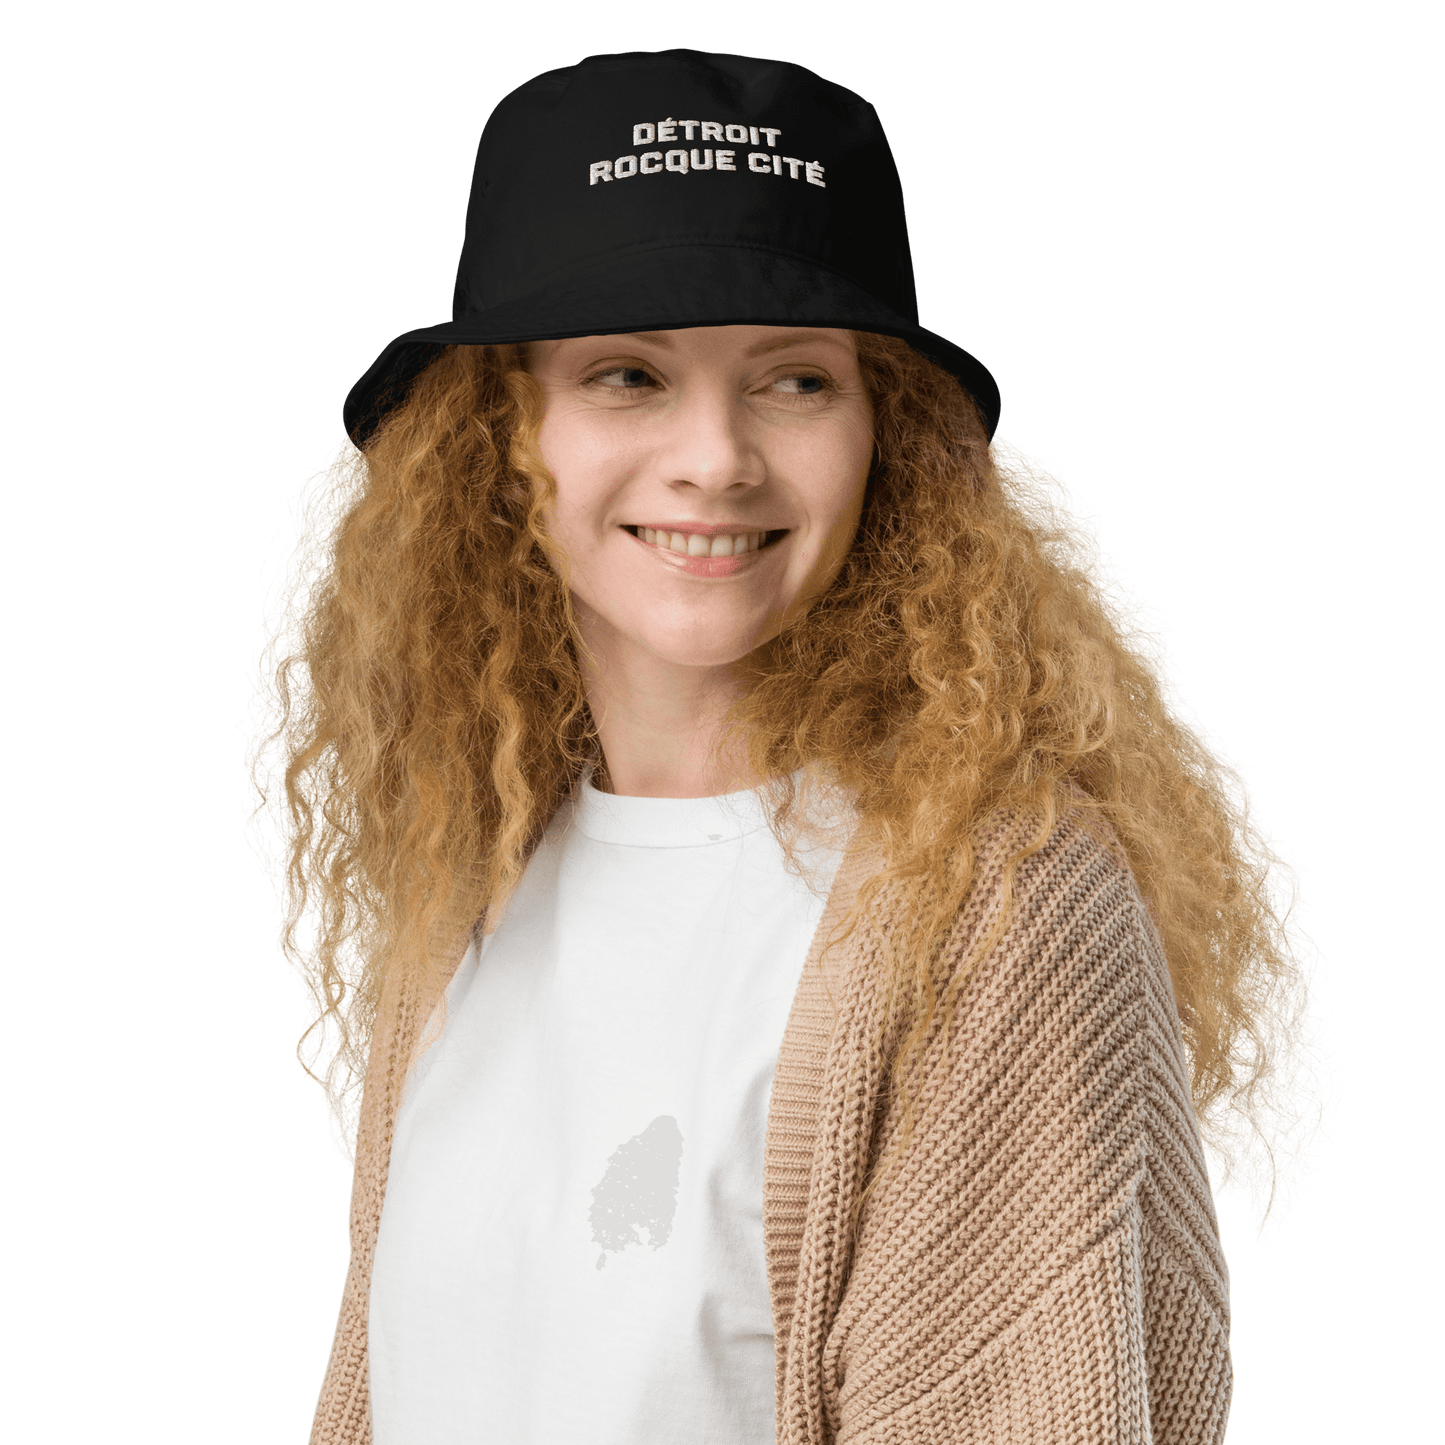 'Détroit Rocque Cité' Bucket Hat | White/Navy Embroidery - Circumspice Michigan